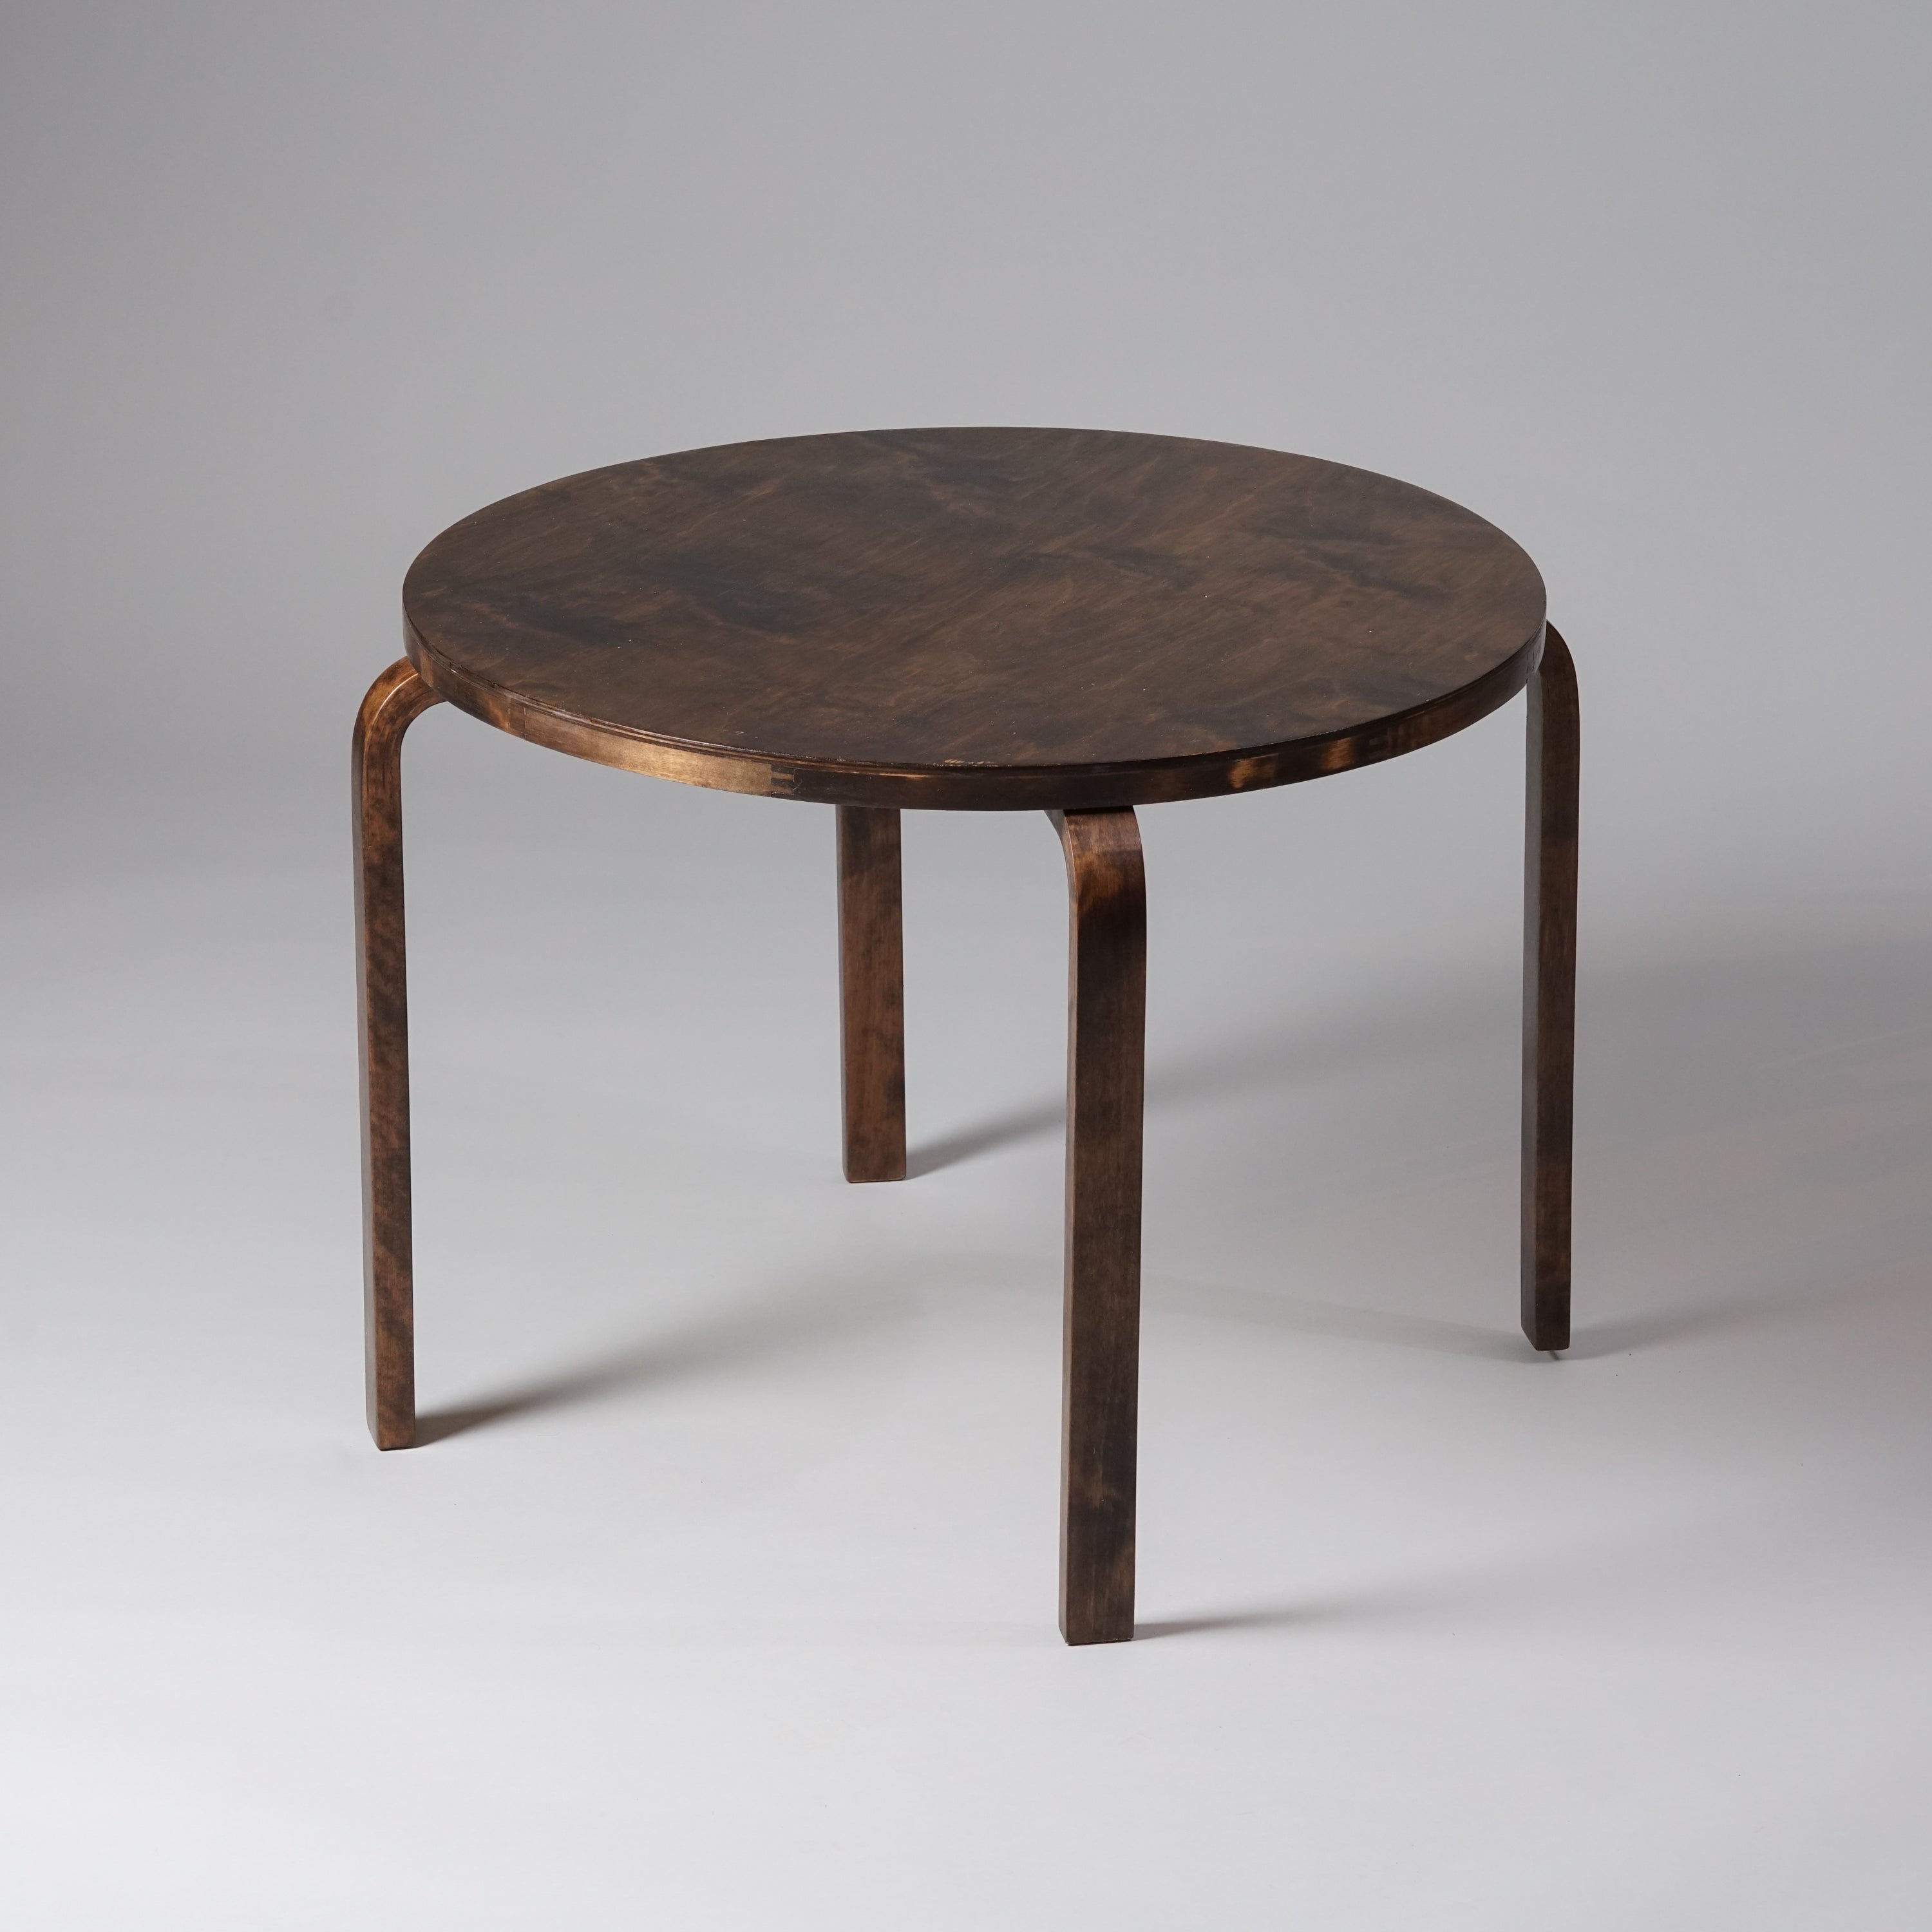 Ympyränmuotoinen puinen pöytä, joka on sävyltään tummanruskea.